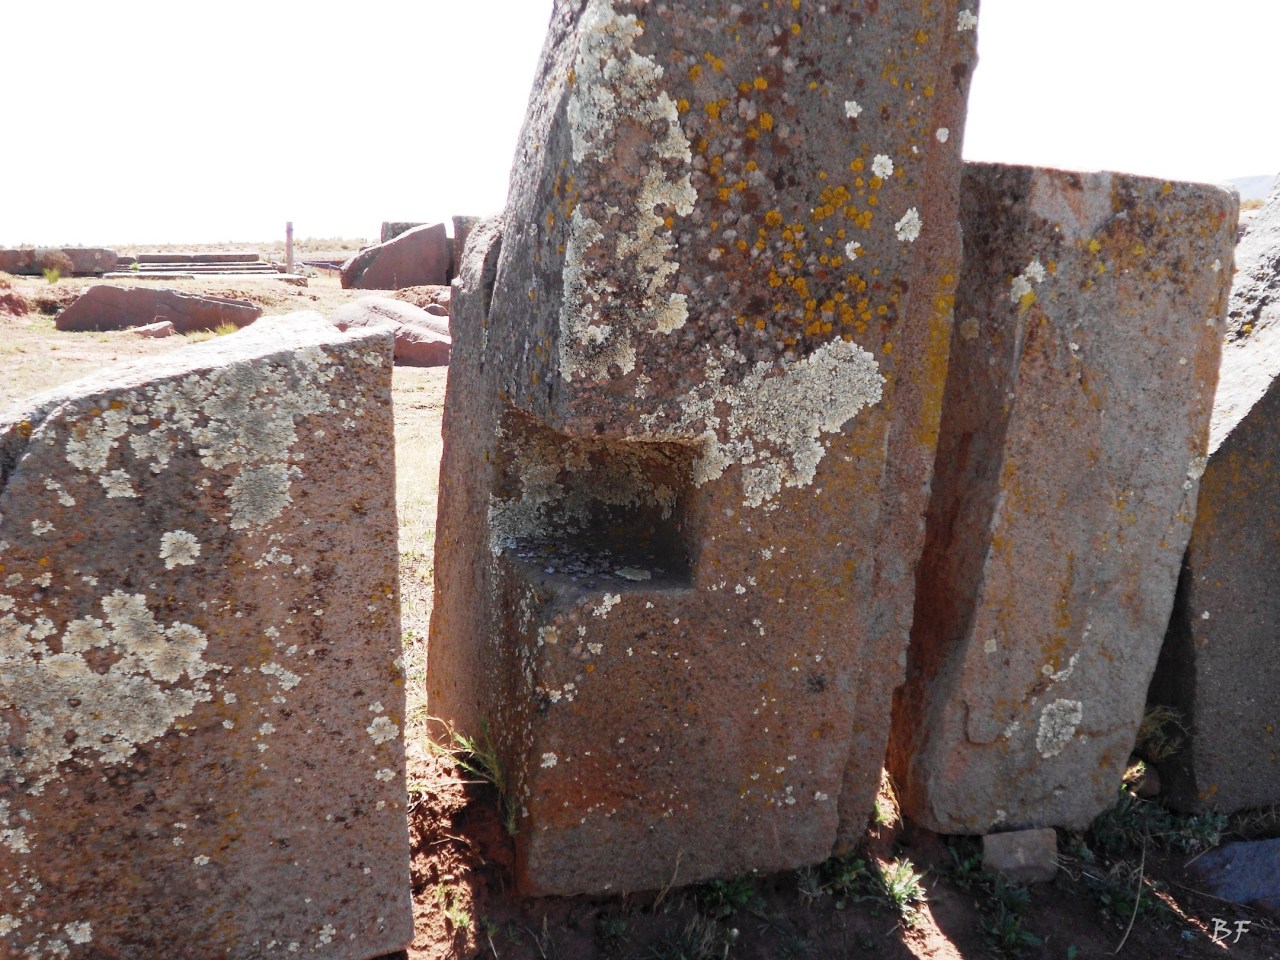 Puma-Punku-Area-Megalitica-Mura-Poligonali-Megaliti-Tiwanaku-Tiahuanaco-Bolivia-38